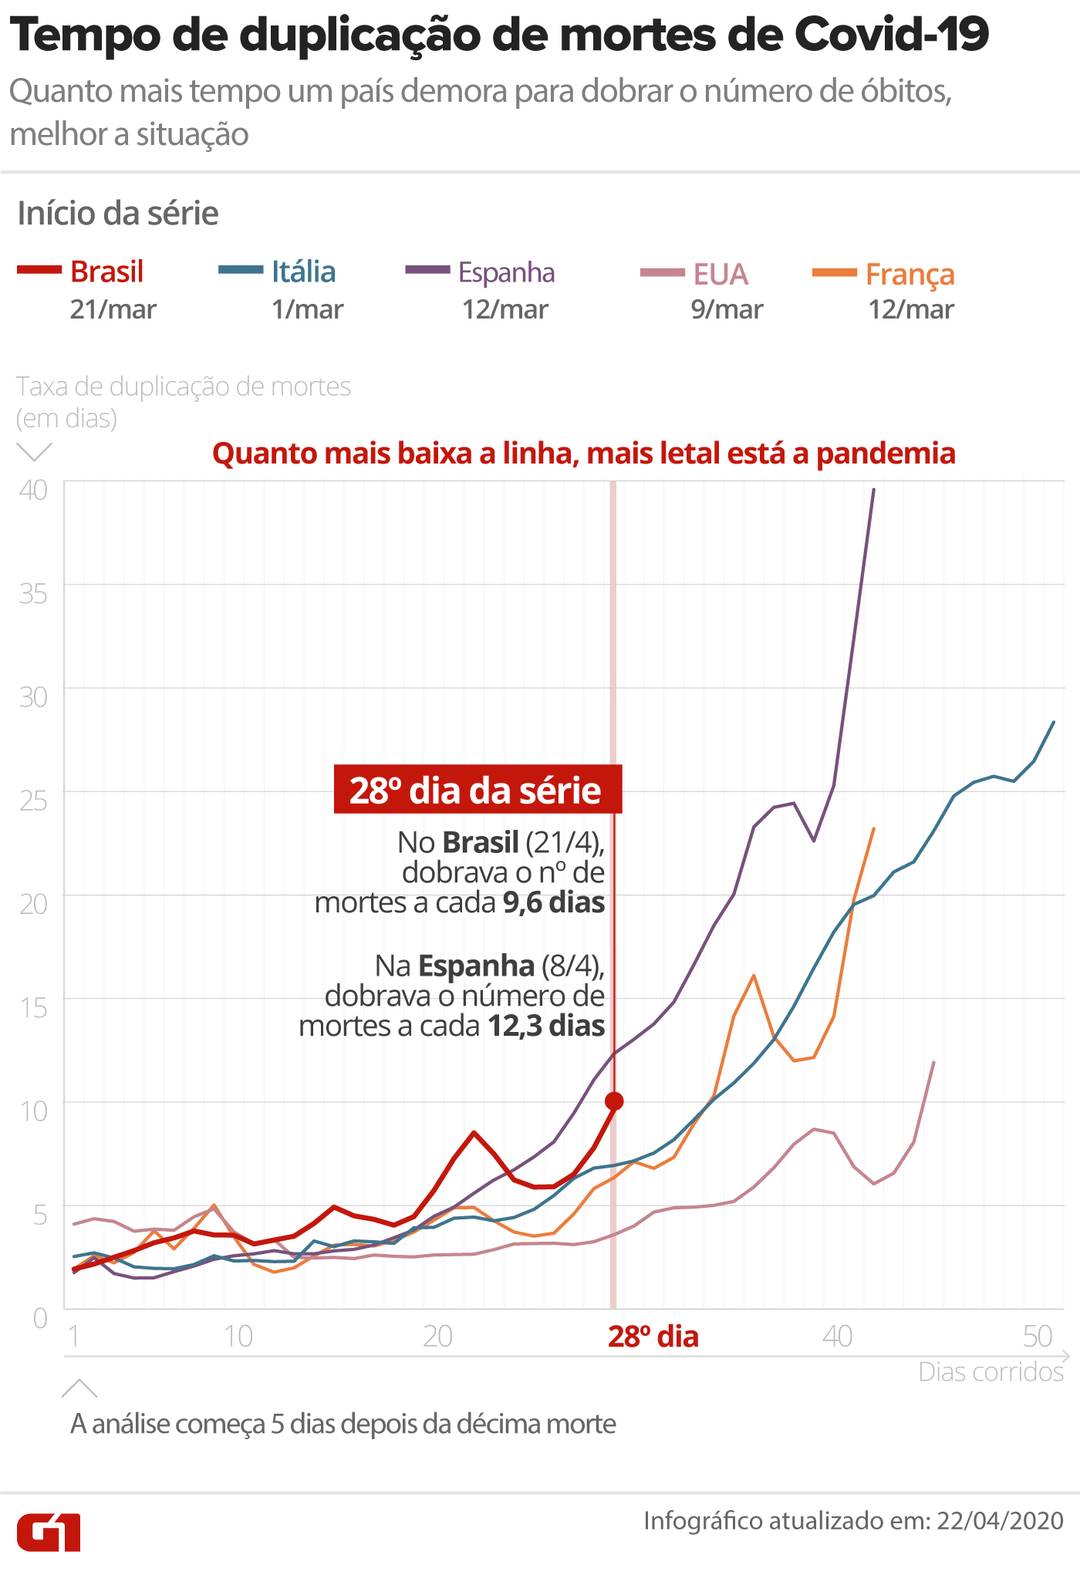 Comparação do tempo de duplicação de mortes provocadas pelo novo coronavírus em cinco países: Brasil, Itália, Espanha, Estados Unidos e França; atualização em 22 de abril de 2020